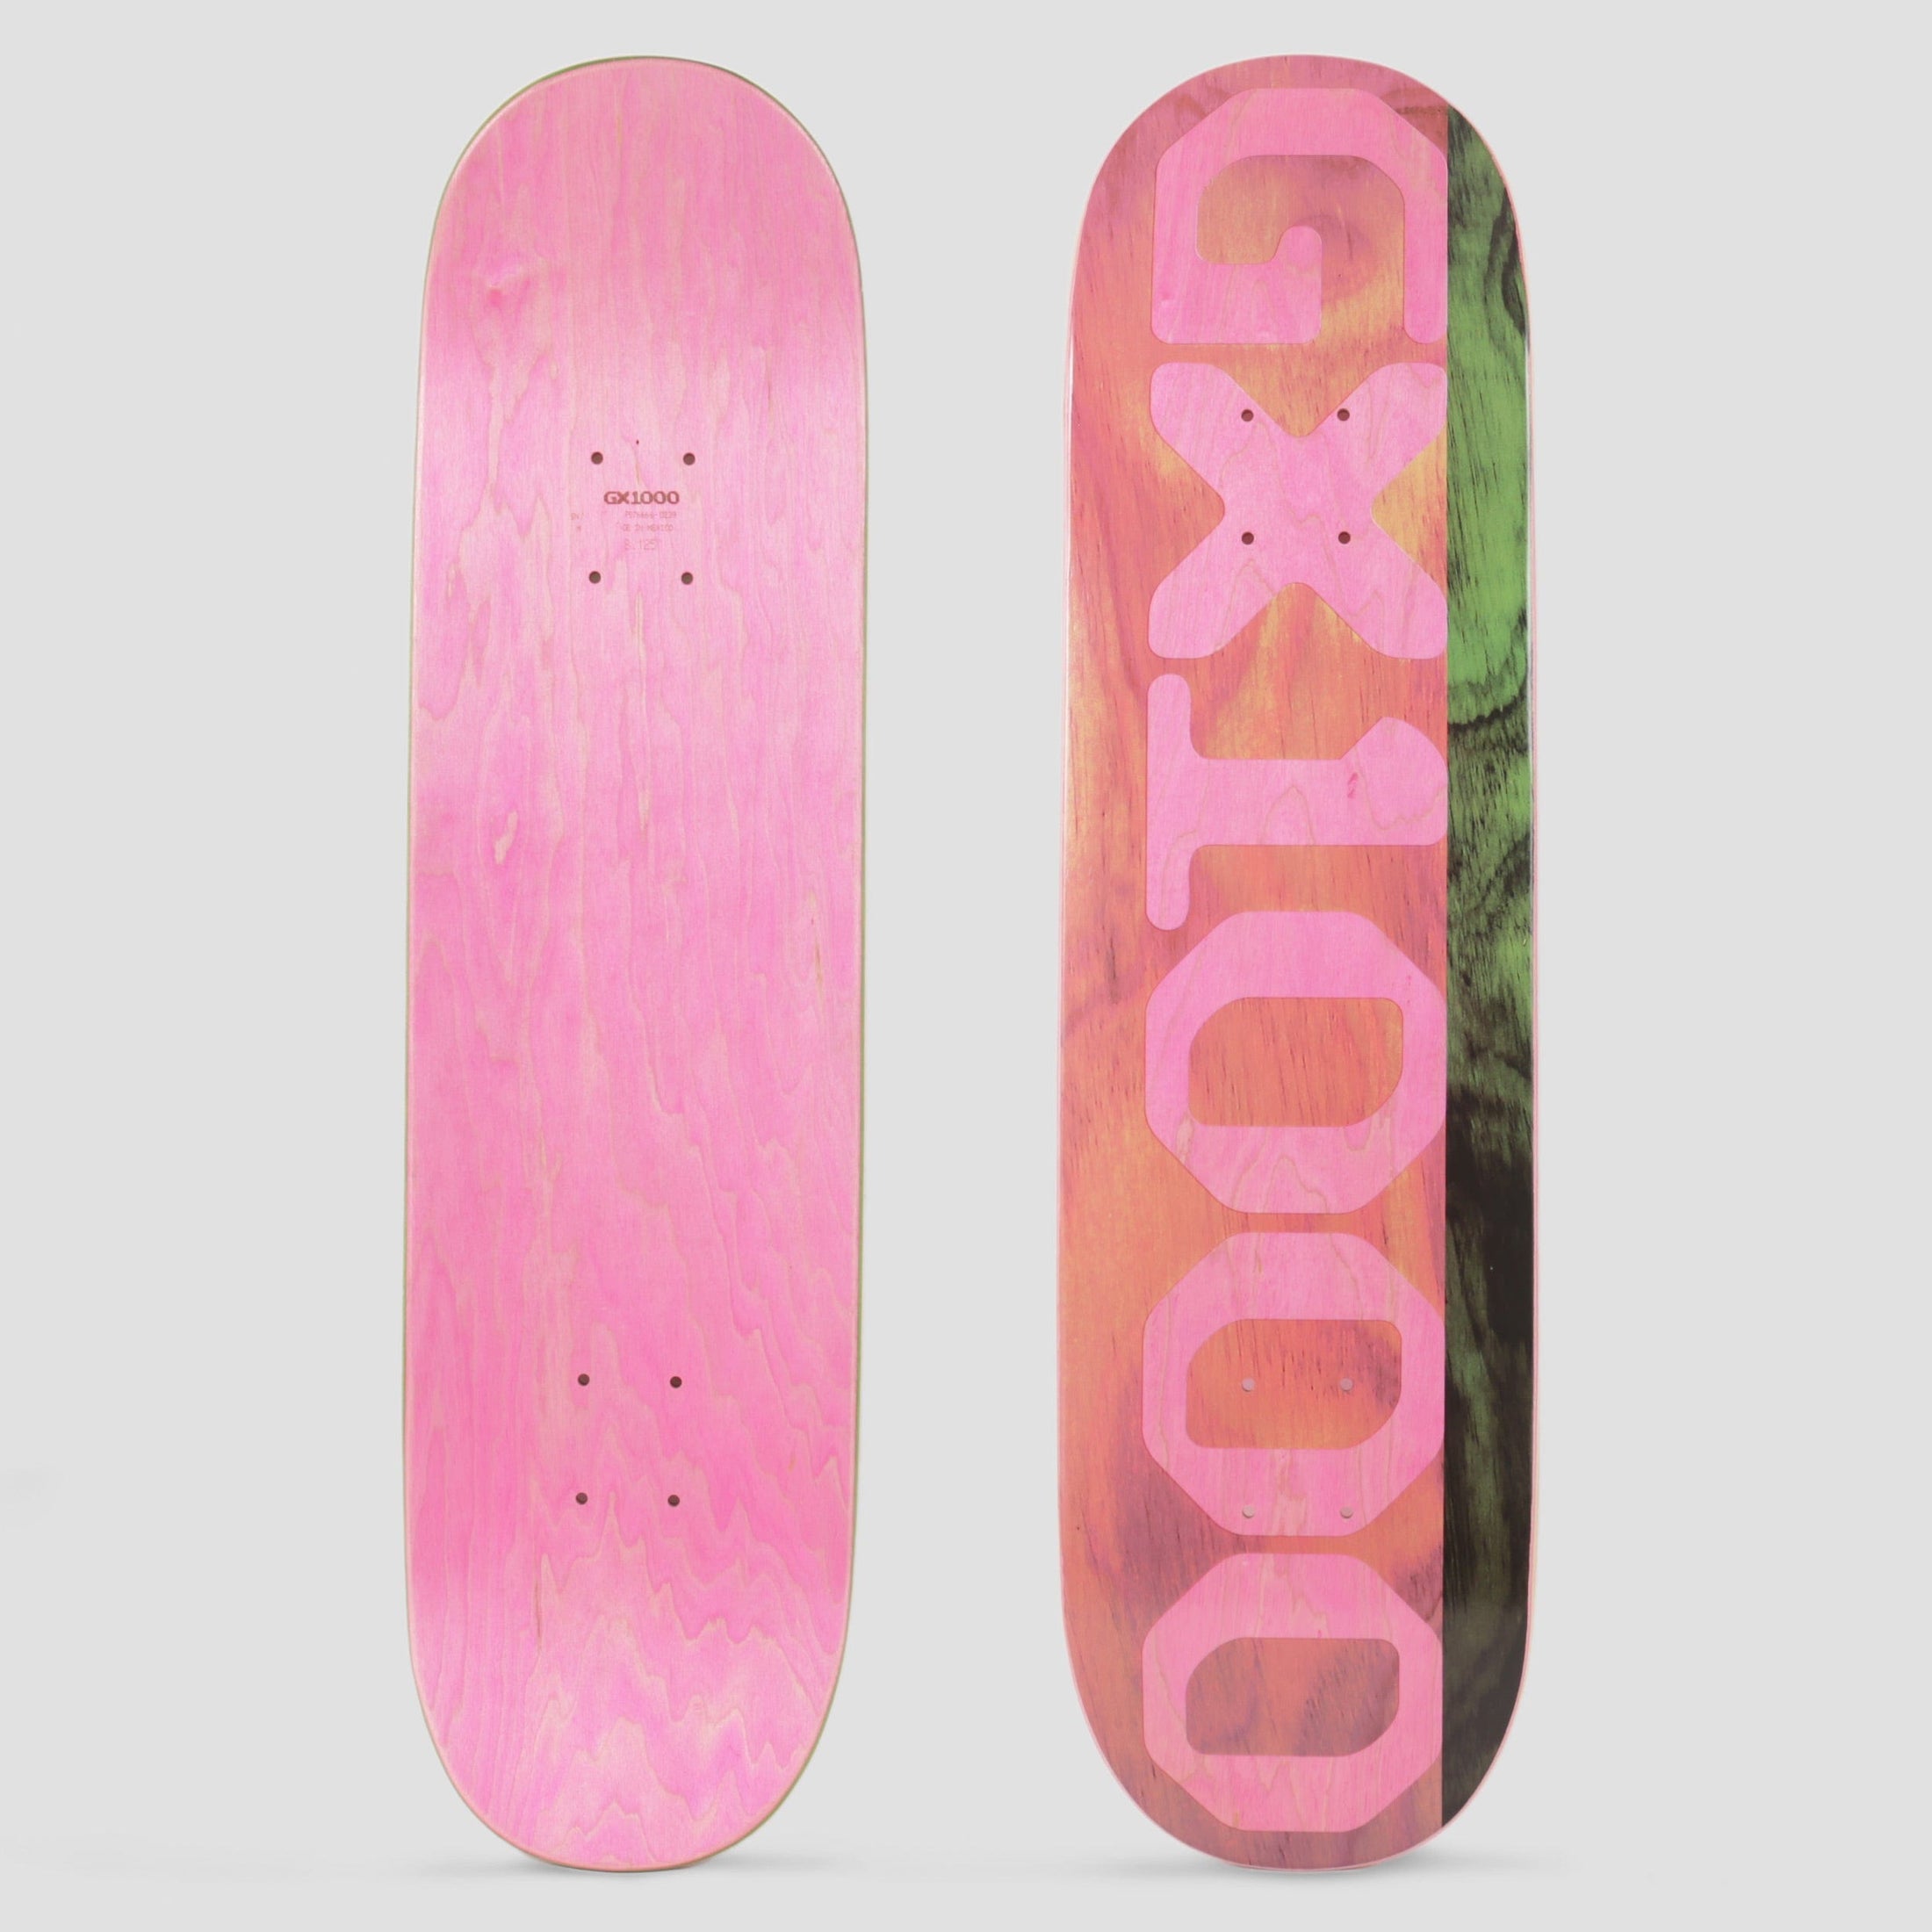 GX1000 8.125 Split Veneer Skateboard Deck Pink / Olive